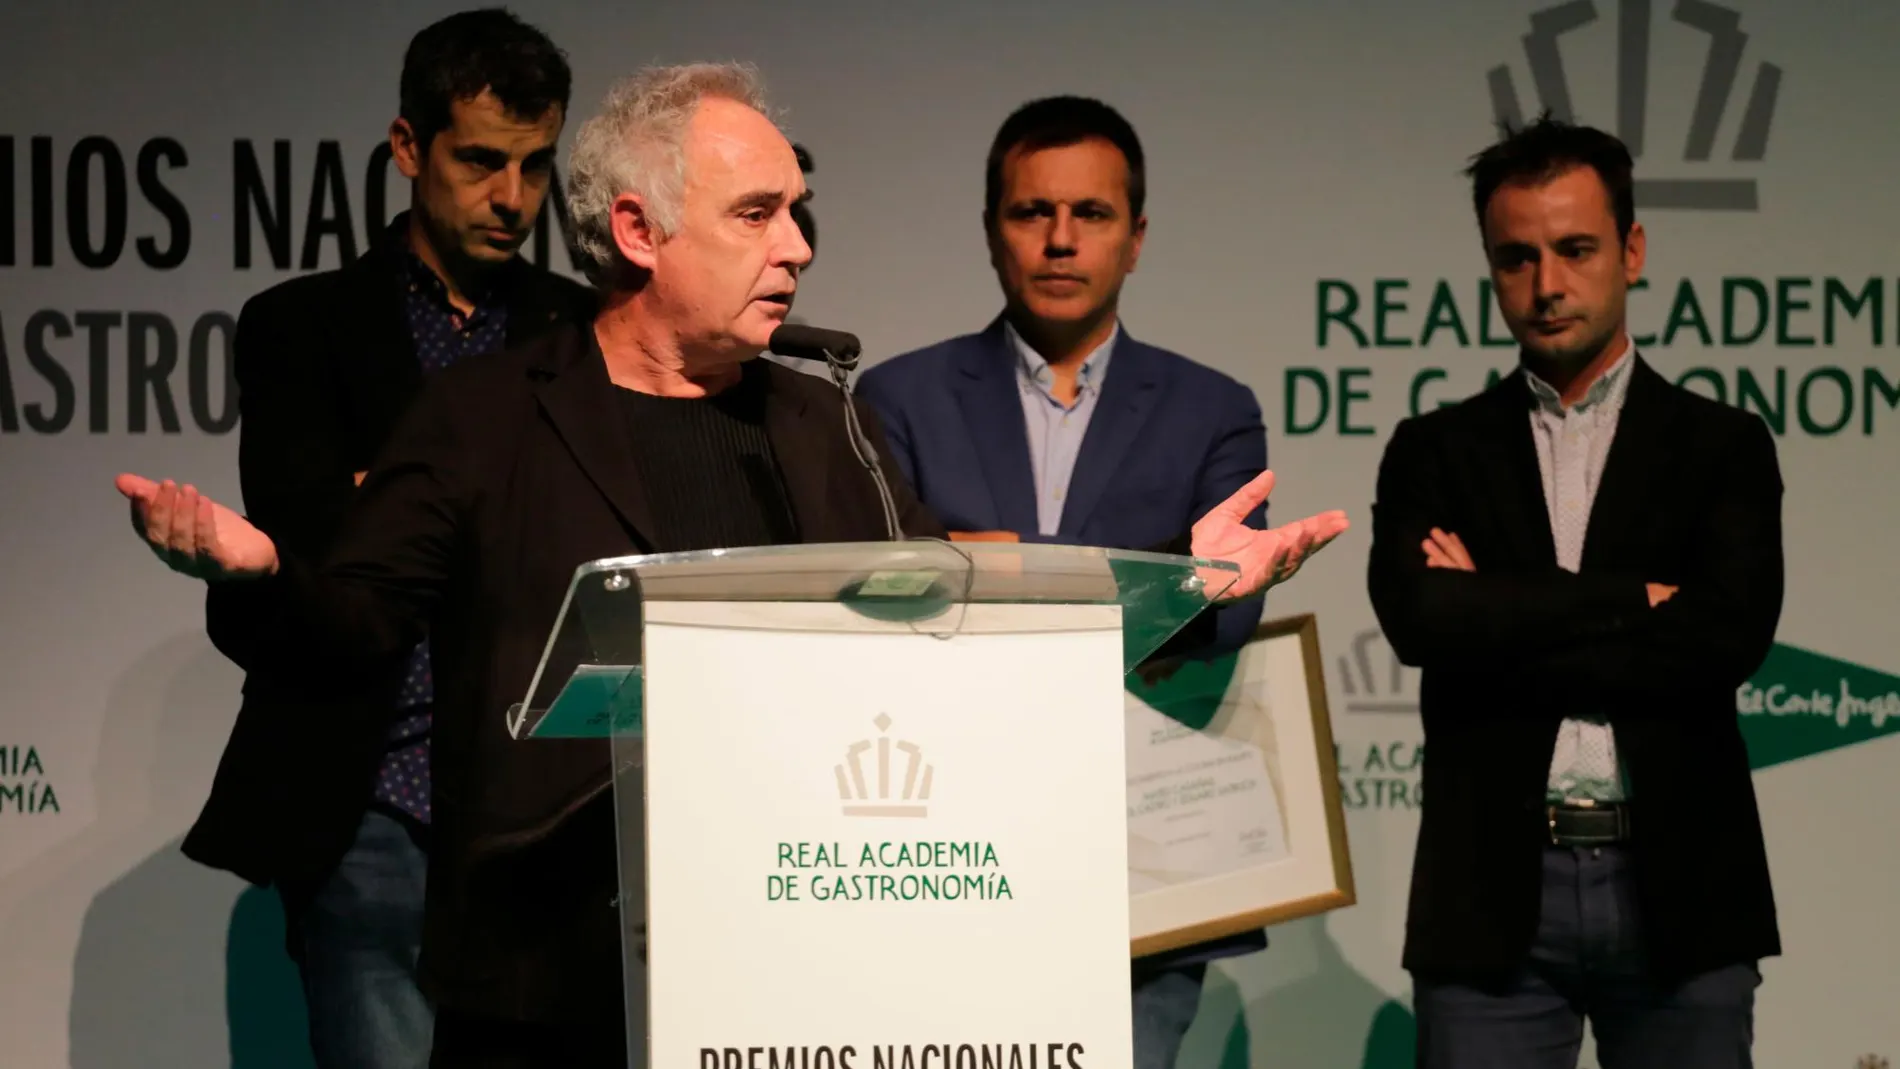 Ferran Adriá, entrega el premio al mejor equipo. Mateu Casañas, Oriol Castro y Eduard Xatruch, del restaurante Disfrutar de Barcelona / Cipriano Pastrano